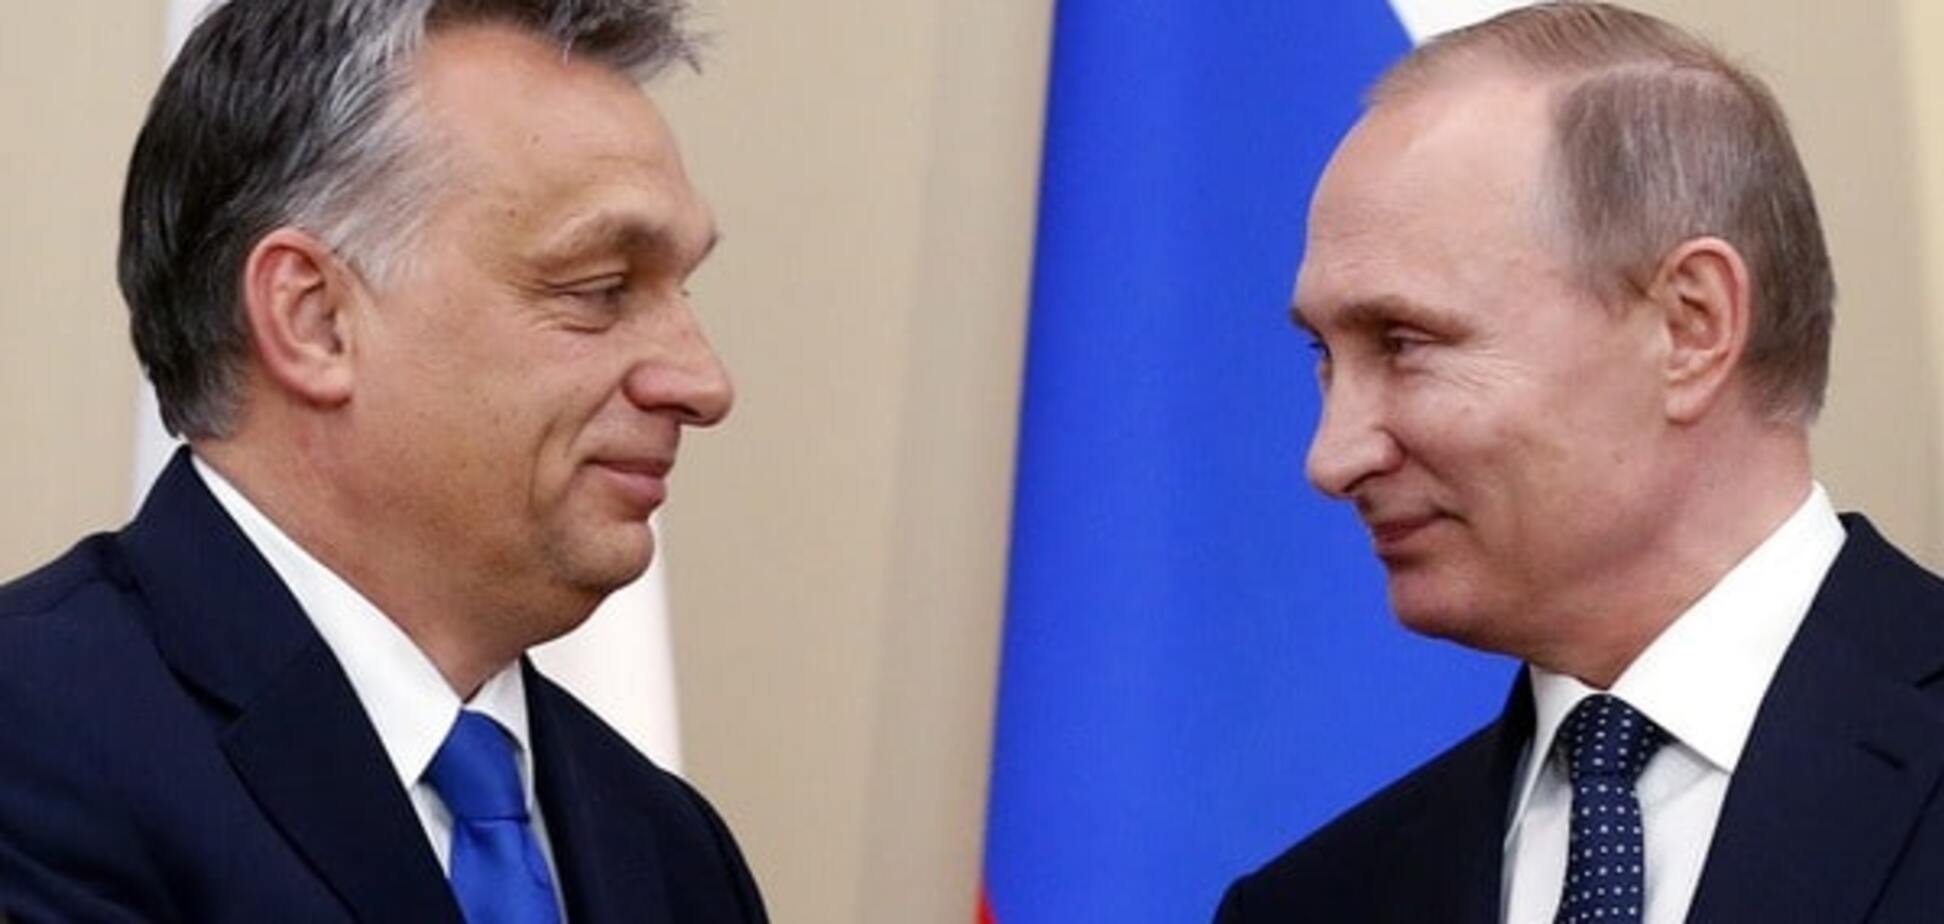 ЕС не будет продлевать санкции против России автоматически – премьер Венгрии